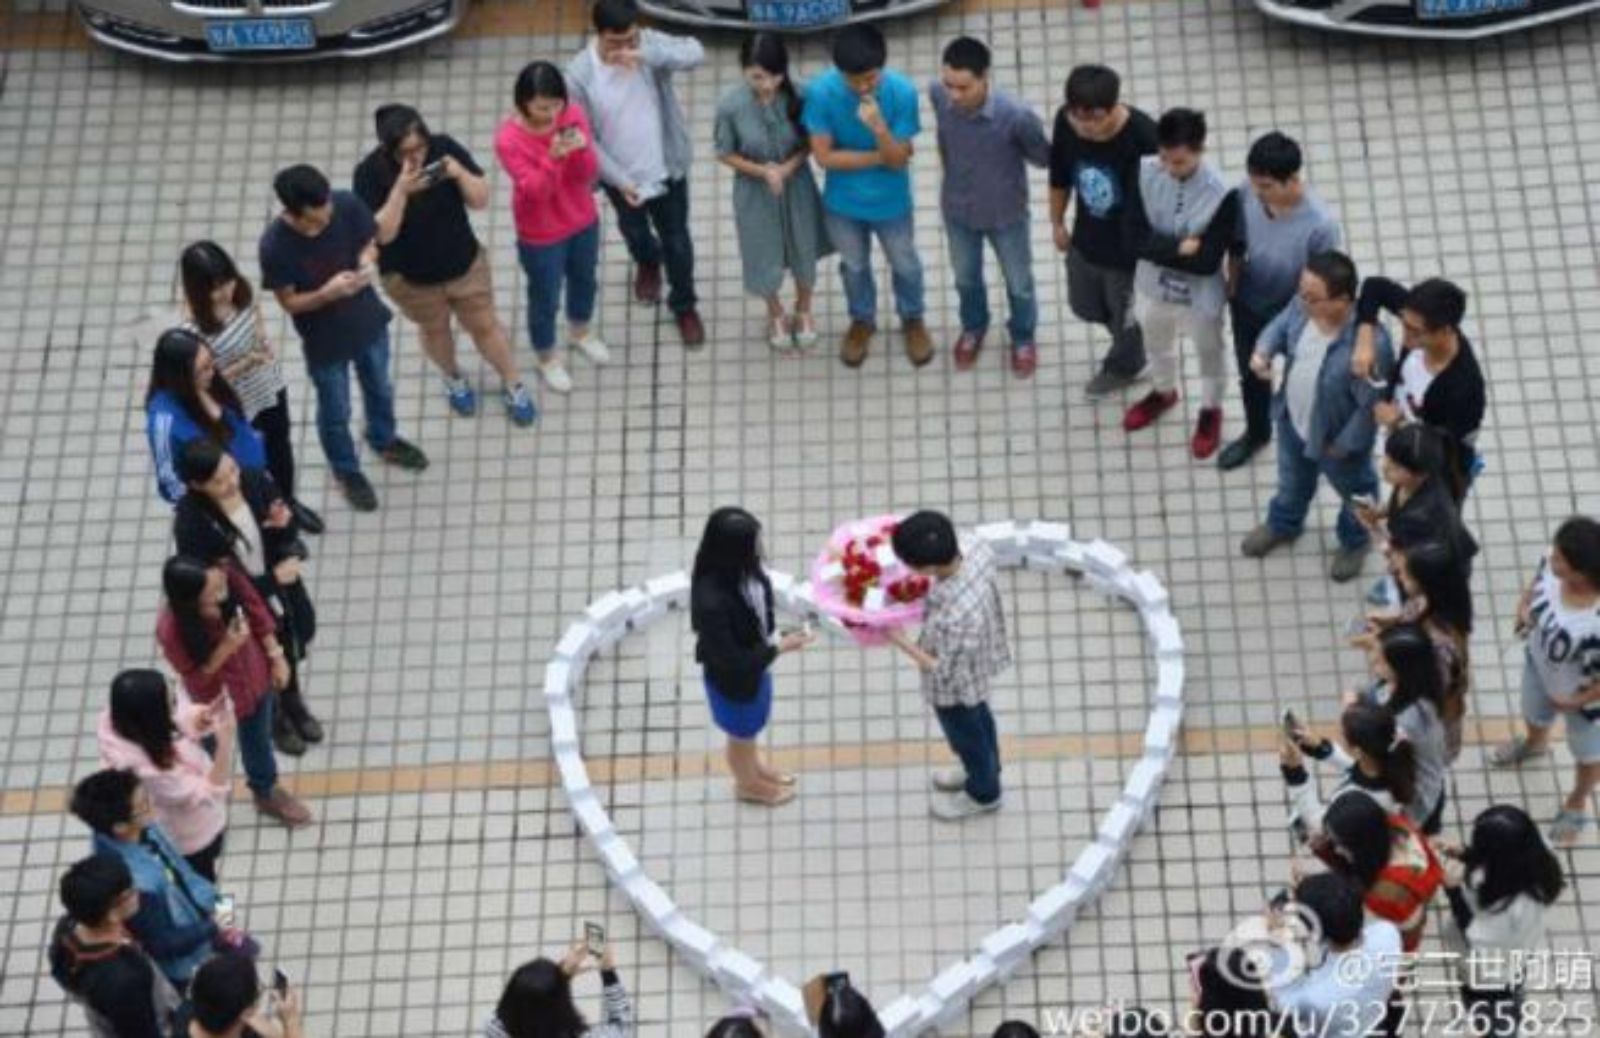 Proposte di nozze in Cina: quando l'esagerazione non aiuta il futuro sposo